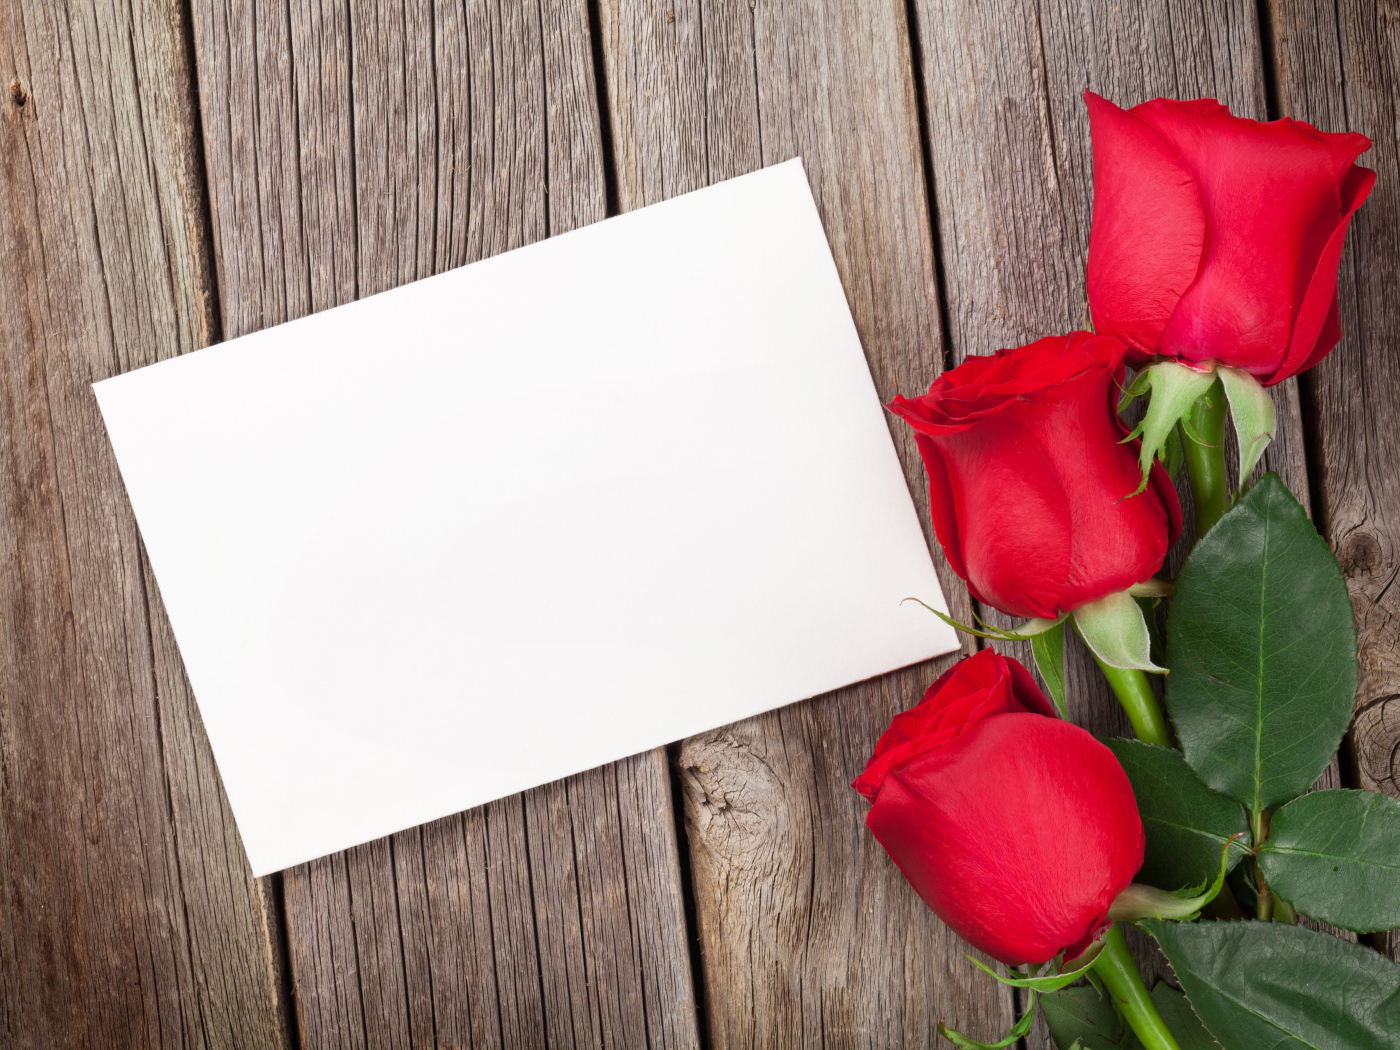 Три красные розы и лист бумаги, шаблон поздравительной открытки